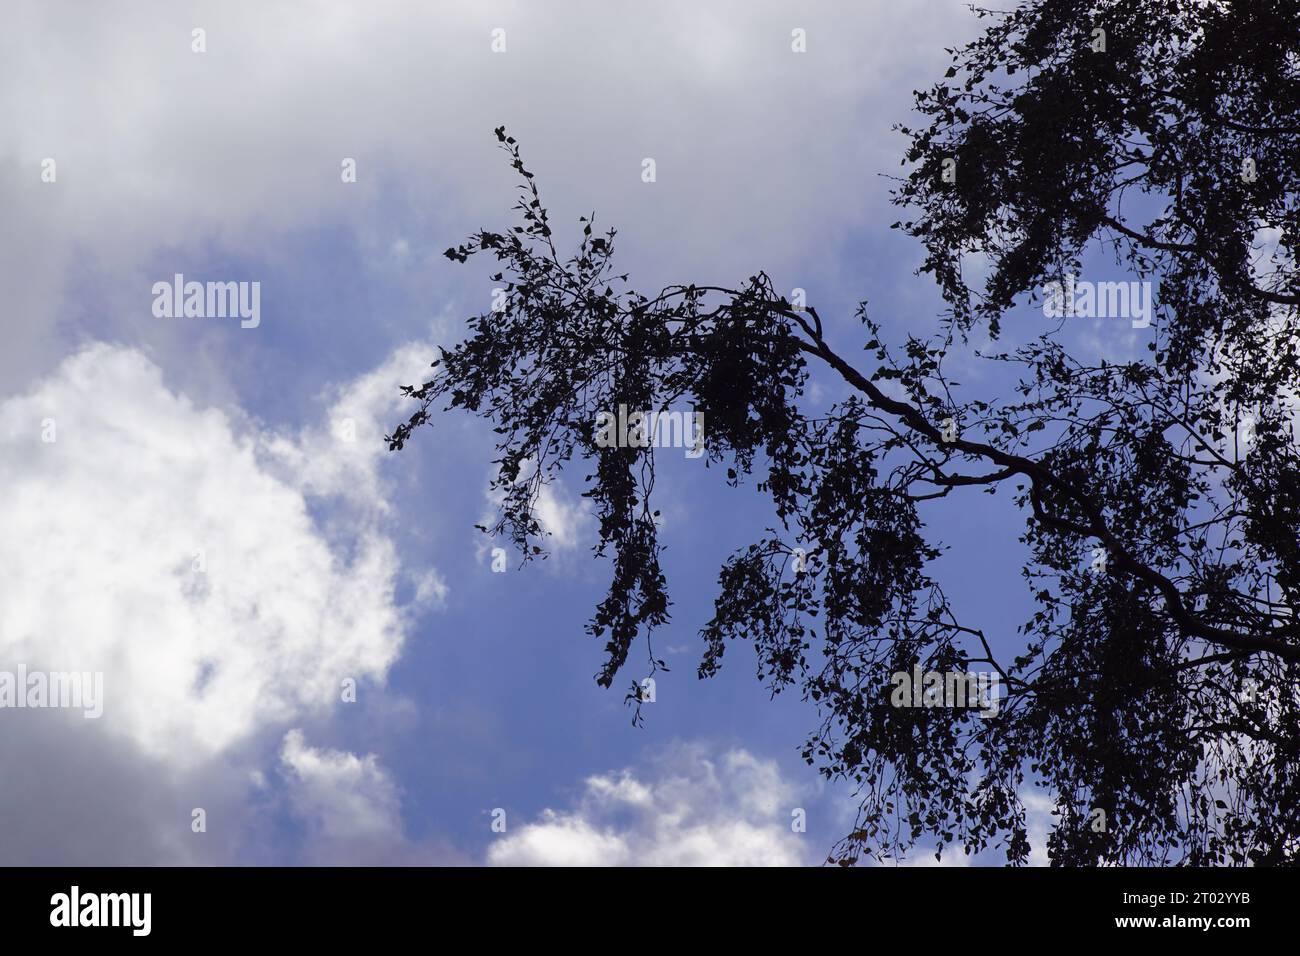 Nuages, ciel, branches de silhouette, brindilles et feuilles d'un bouleau. Fin de l'été, septembre. Pays-Bas Banque D'Images